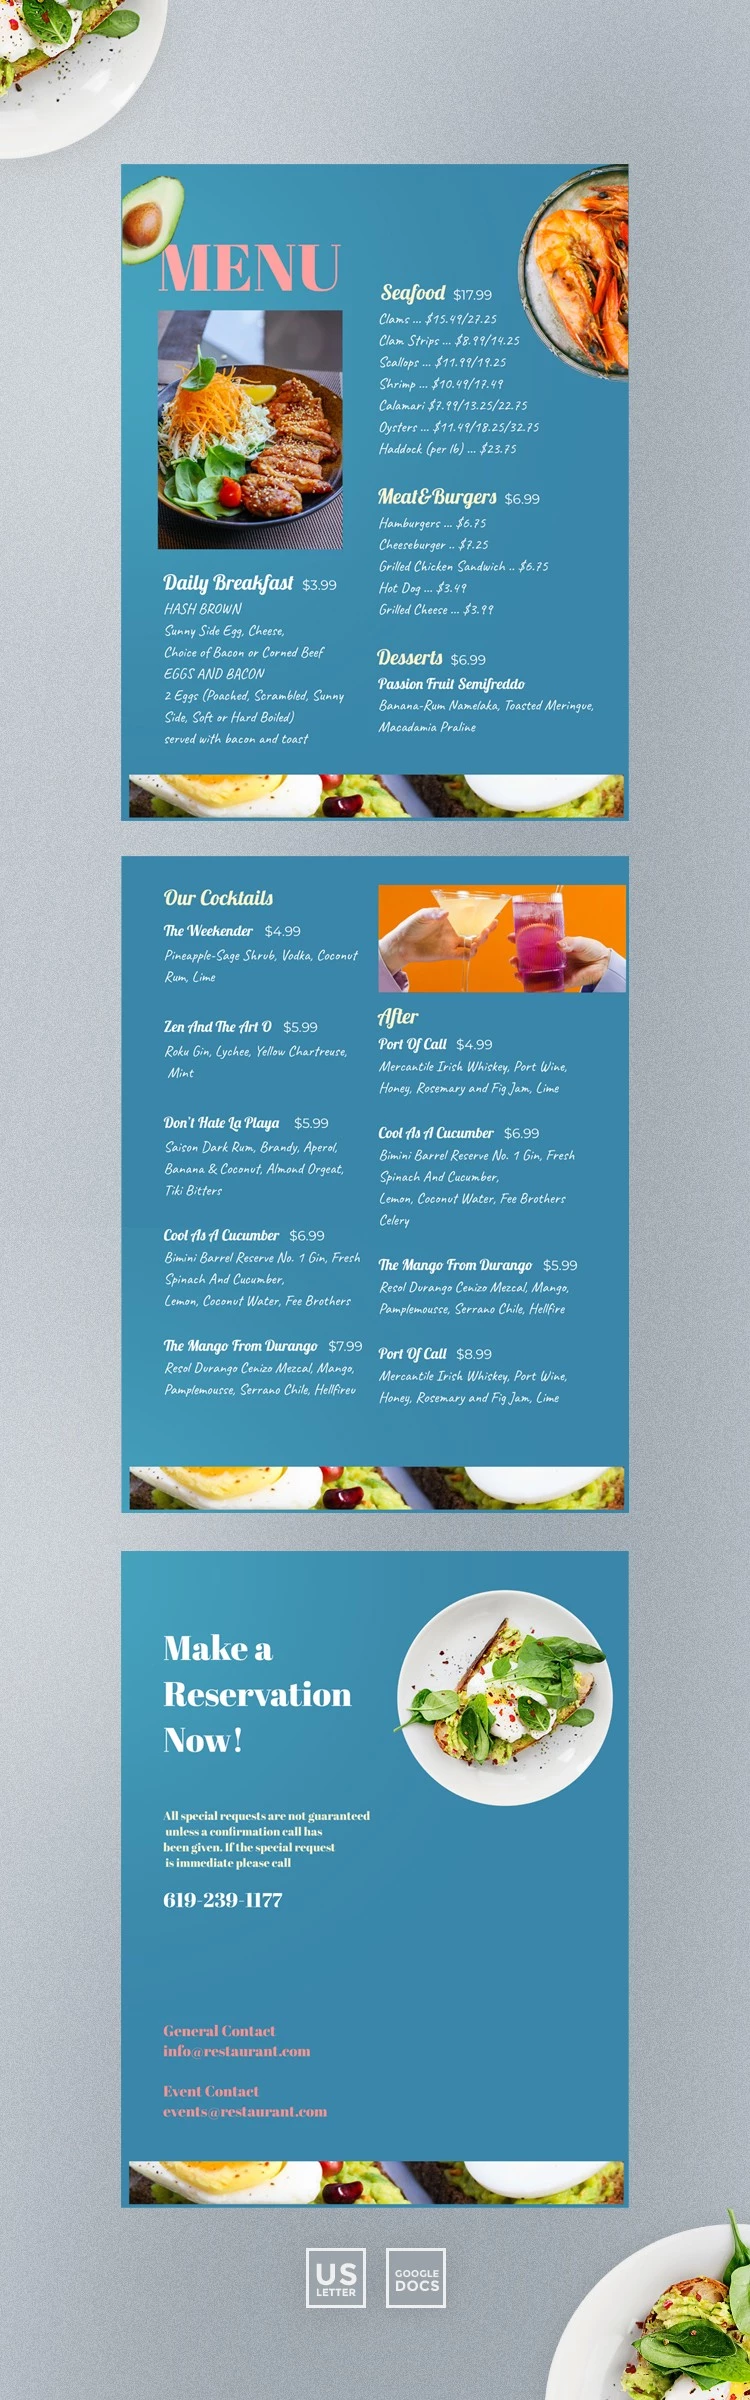 Design de Menu para Restaurante - free Google Docs Template - 10061509